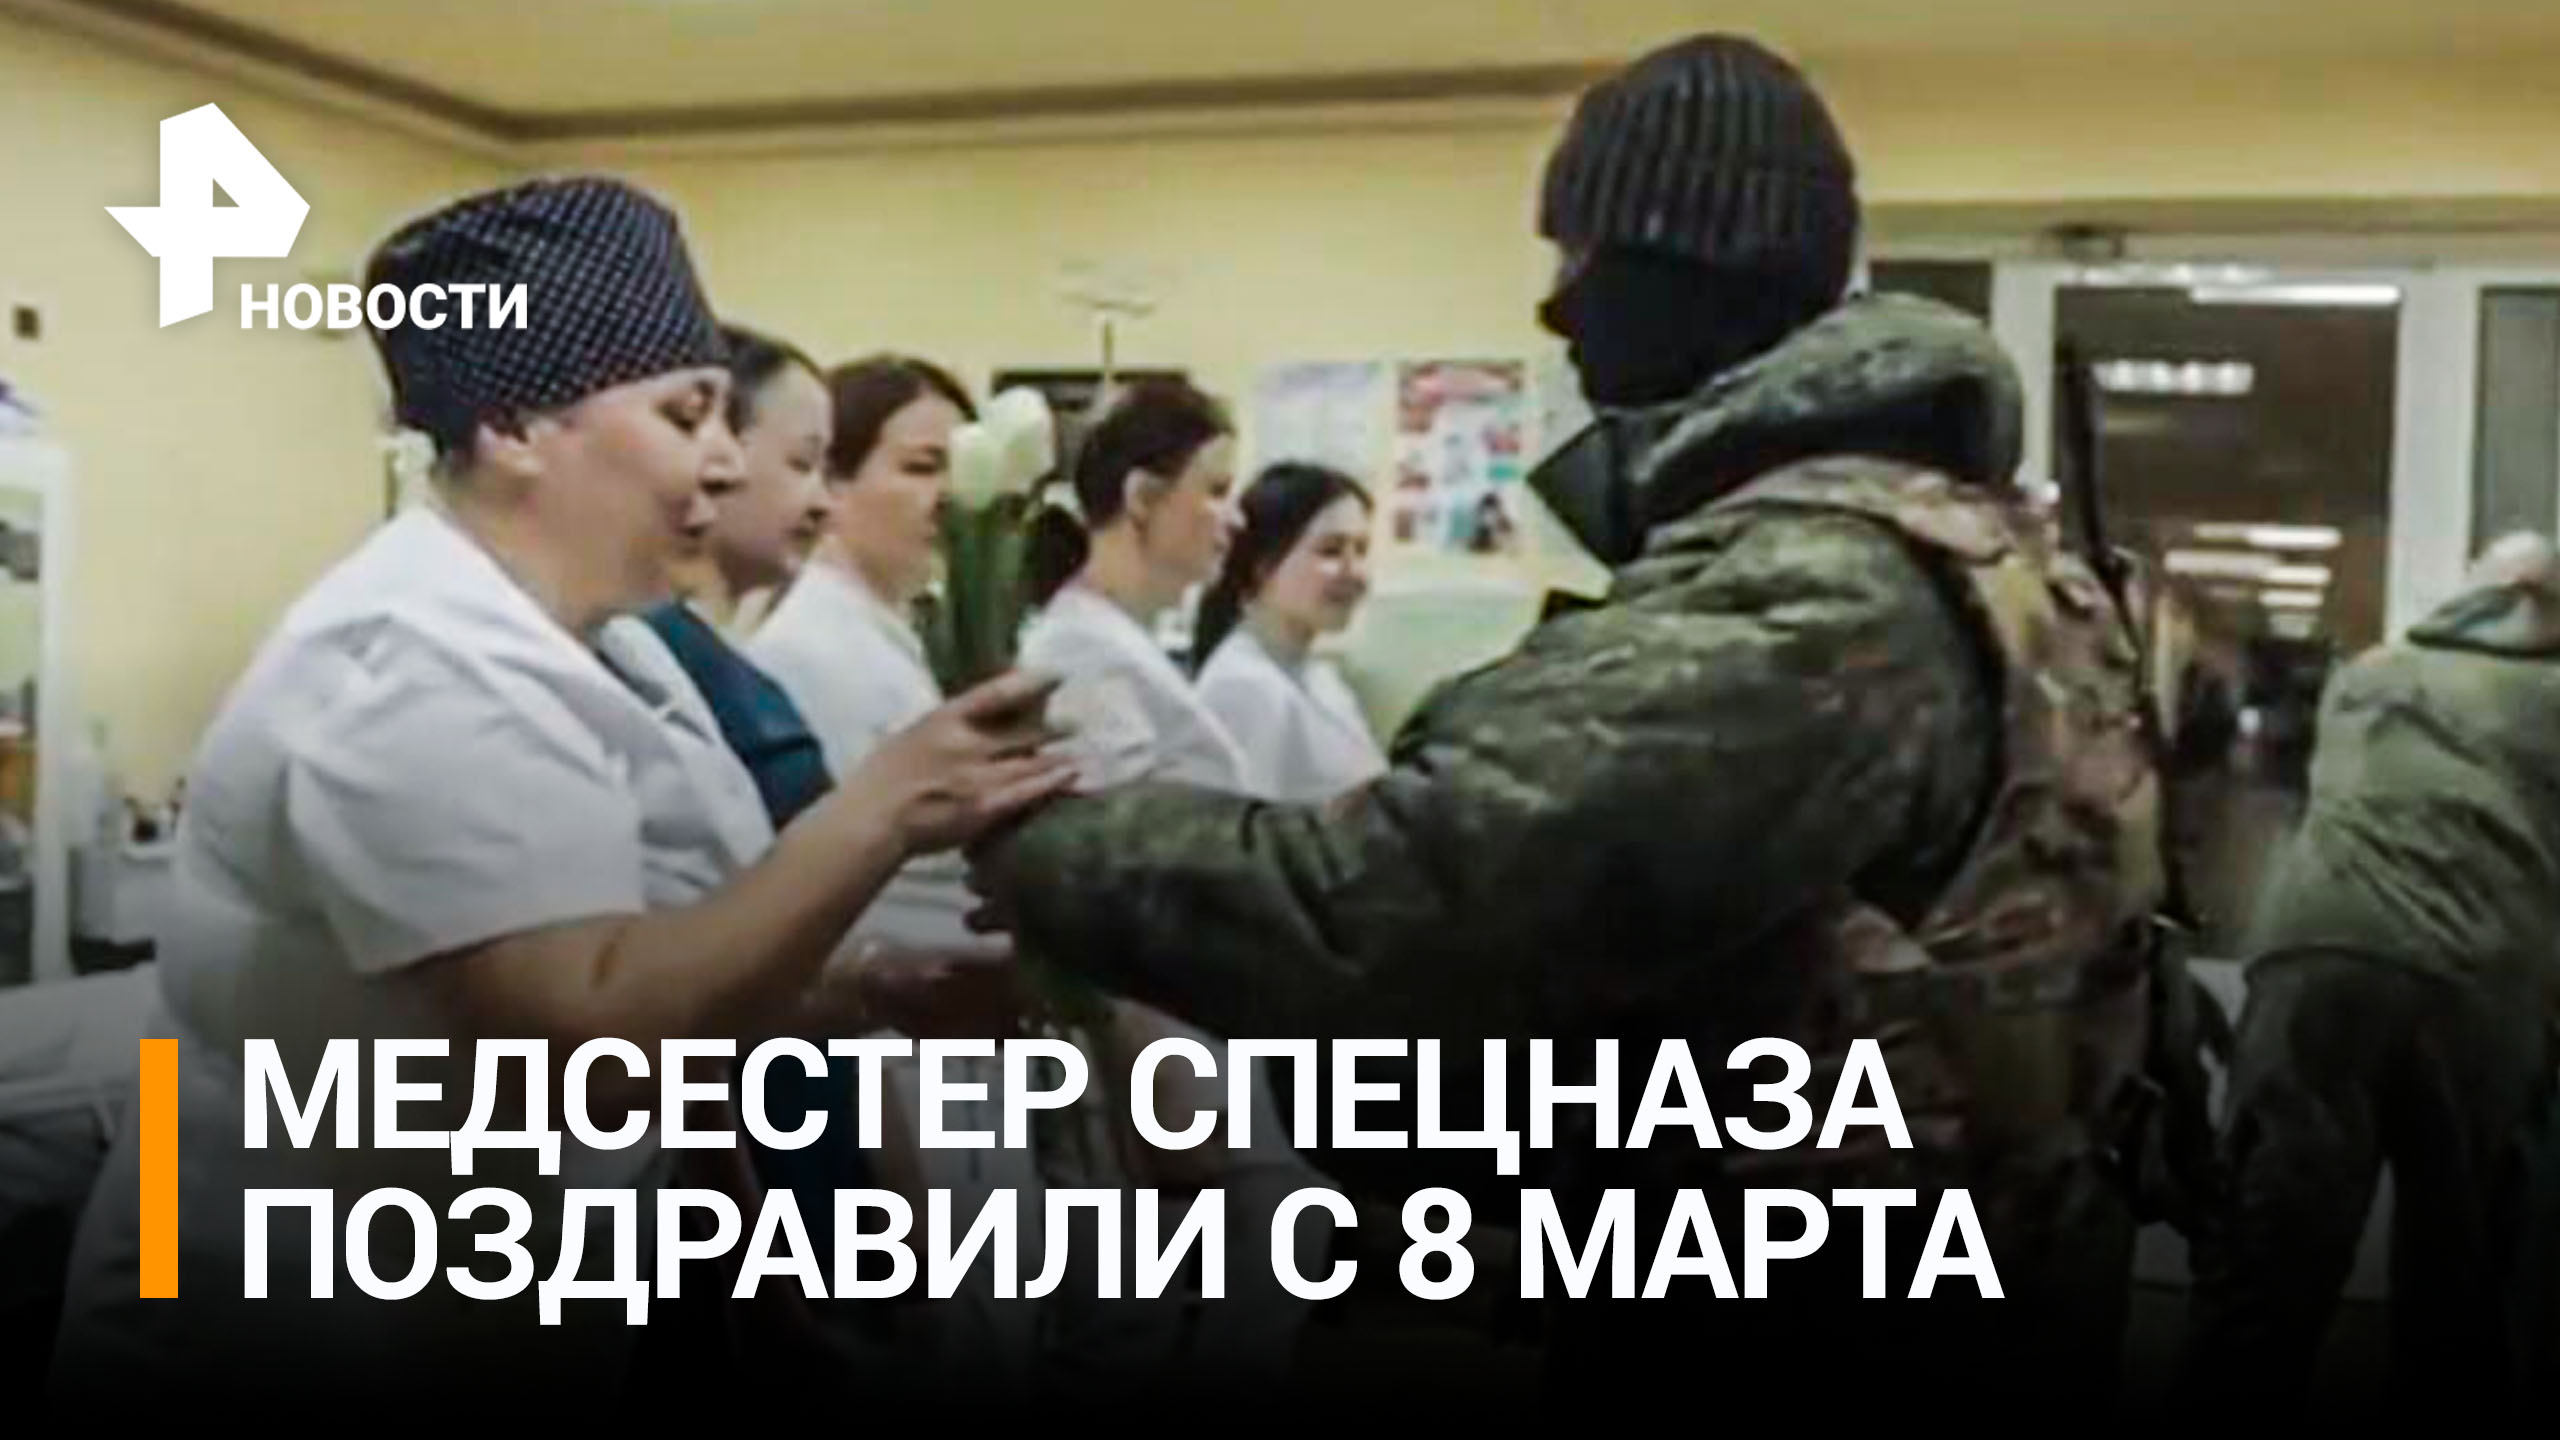 Военные группировки "Восток" поздравили медсестер спецназа с 8 марта / РЕН Новости